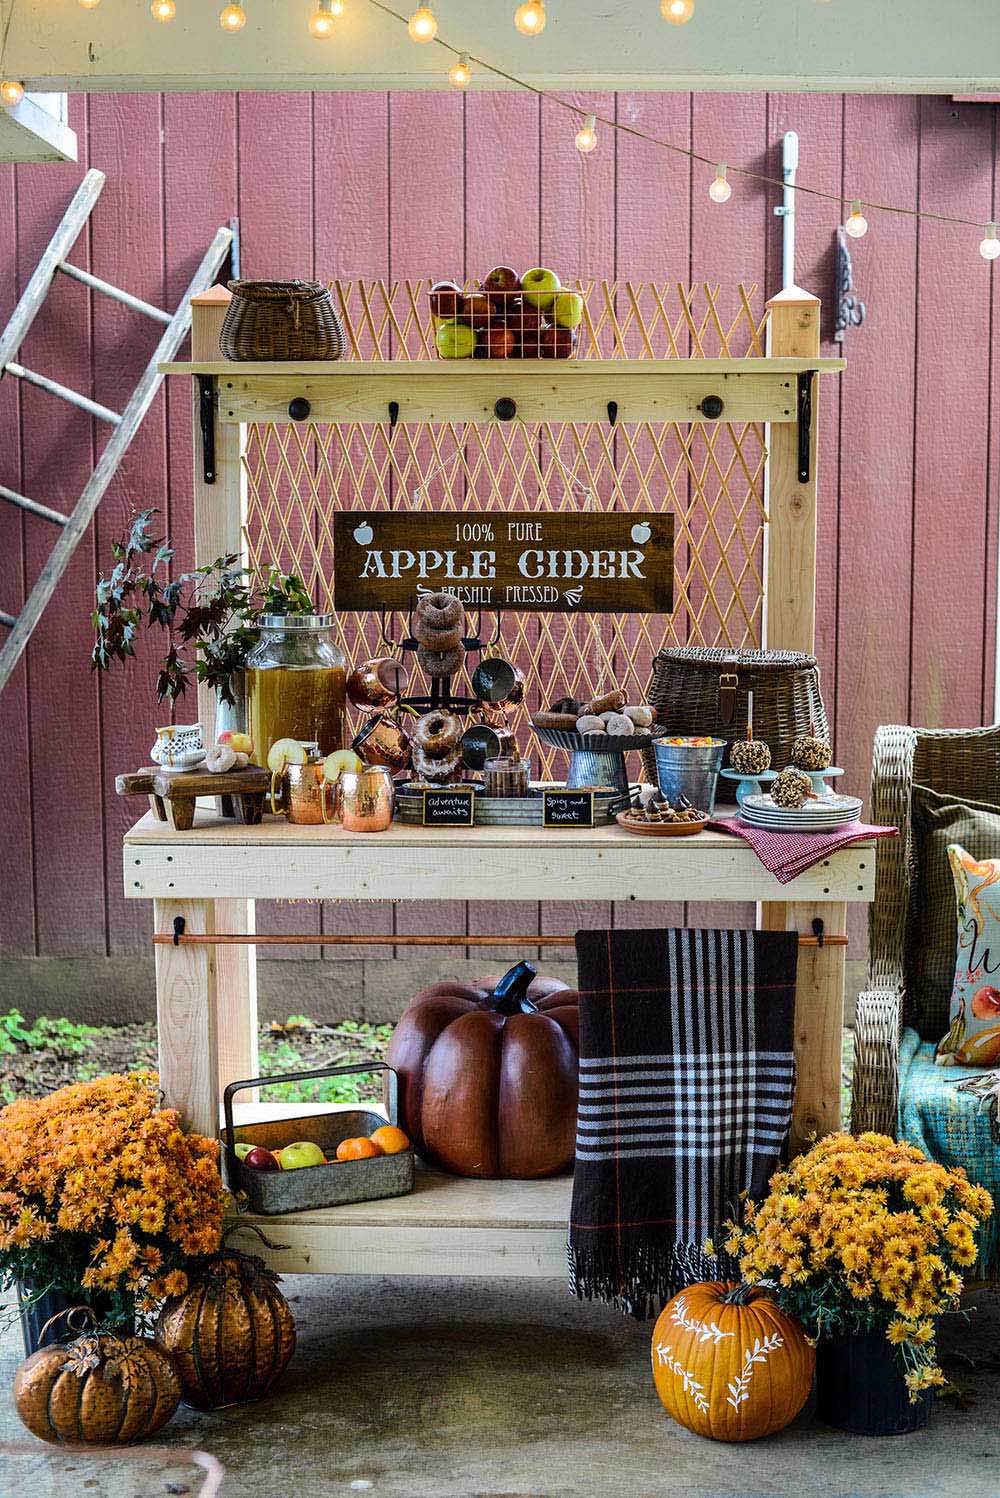 DIY Potting Bench + Apple Cider Bar - The Home Depot